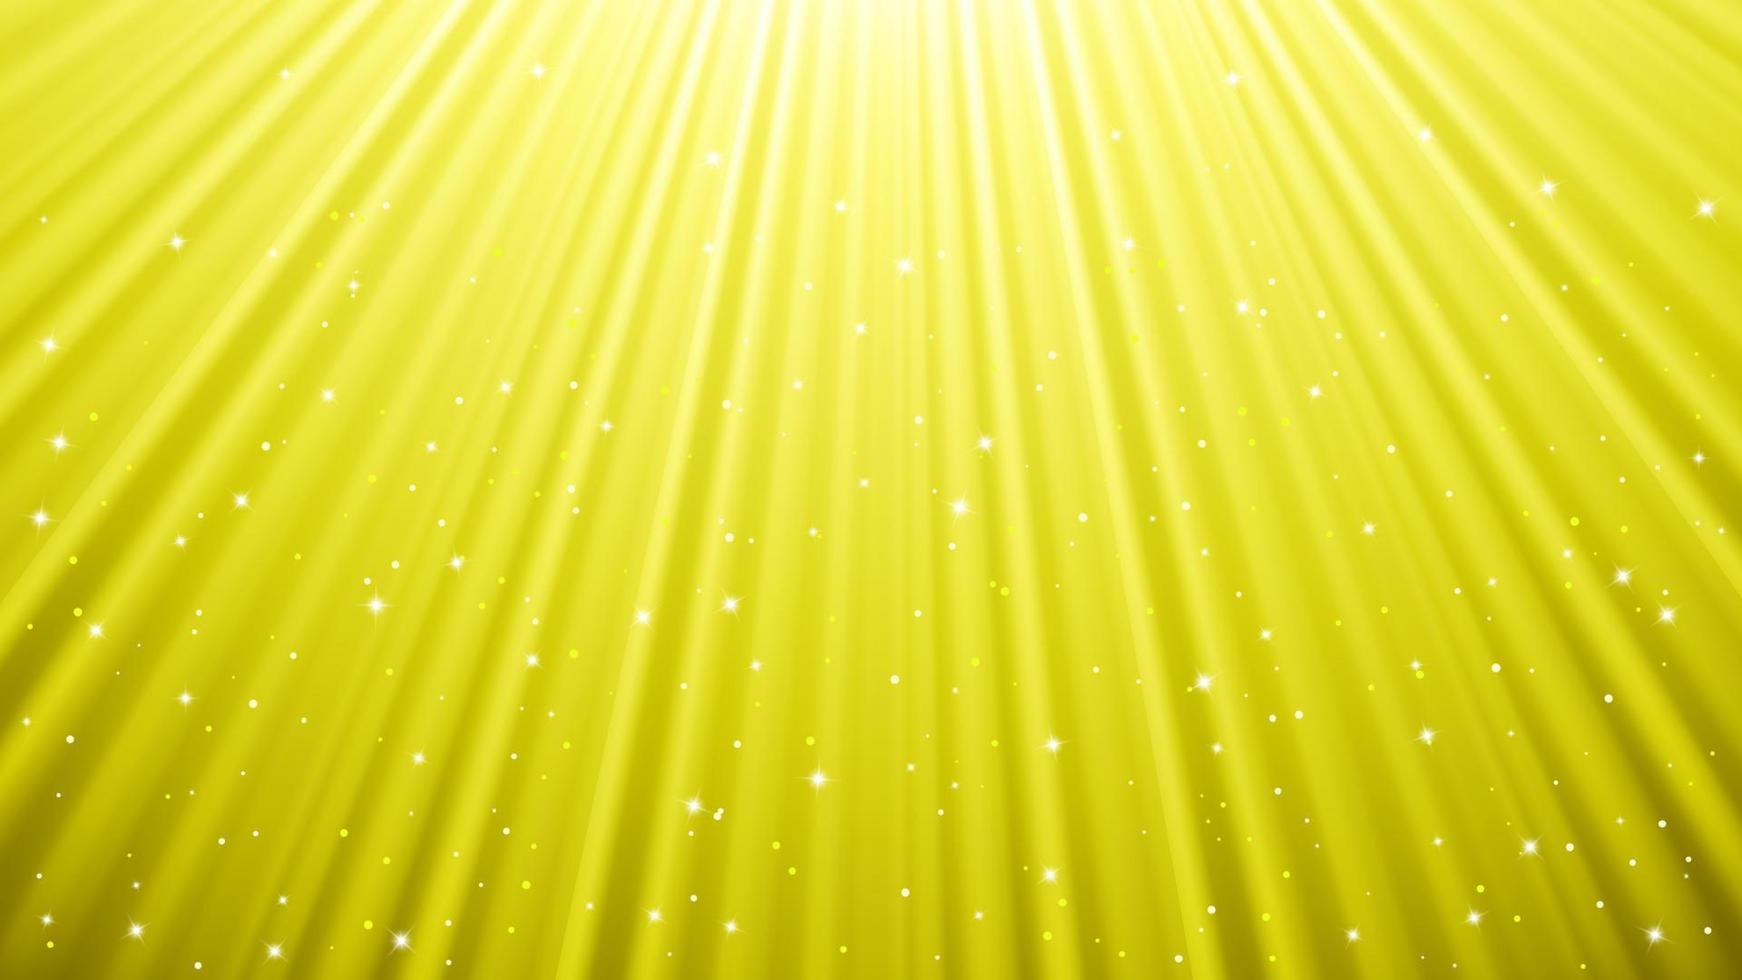 fondo de rayos de luz solar con efectos de luz. telón de fondo amarillo con luz de resplandor. ilustración vectorial vector